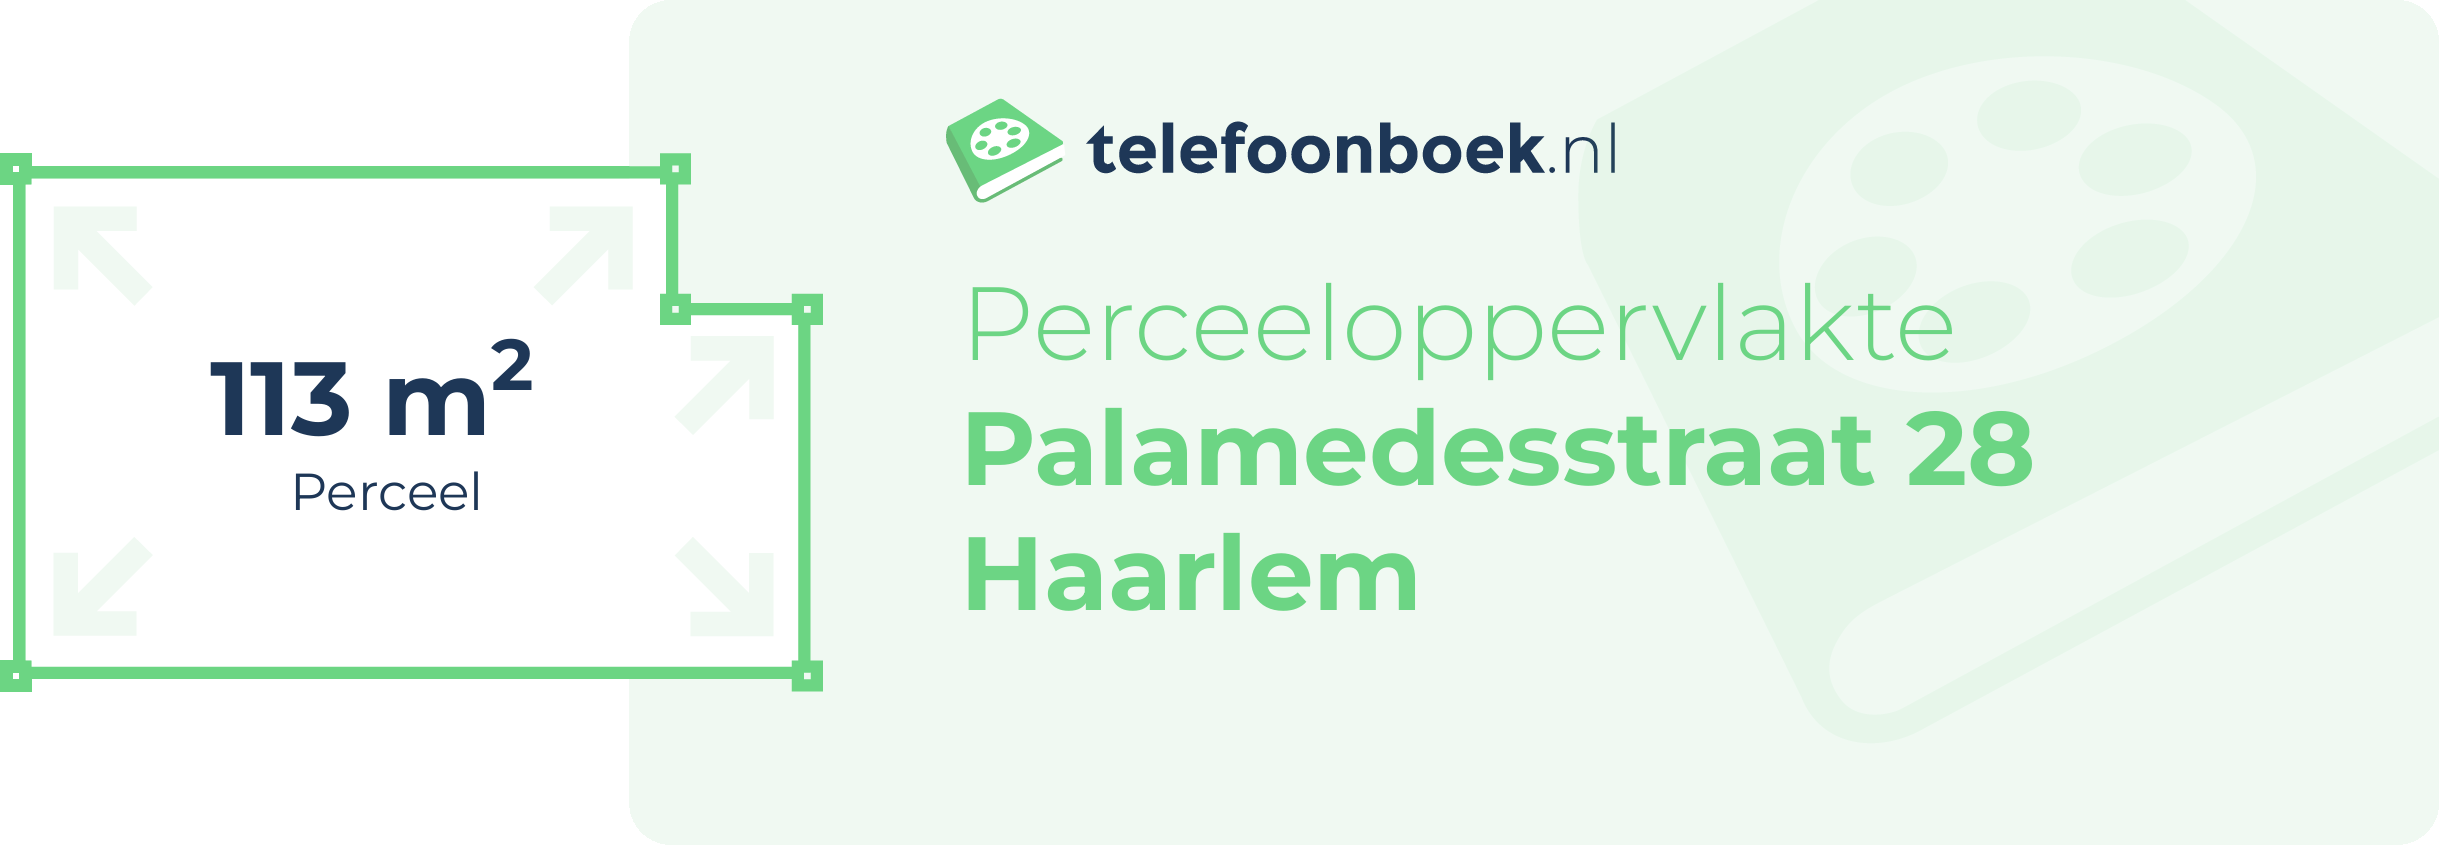 Perceeloppervlakte Palamedesstraat 28 Haarlem